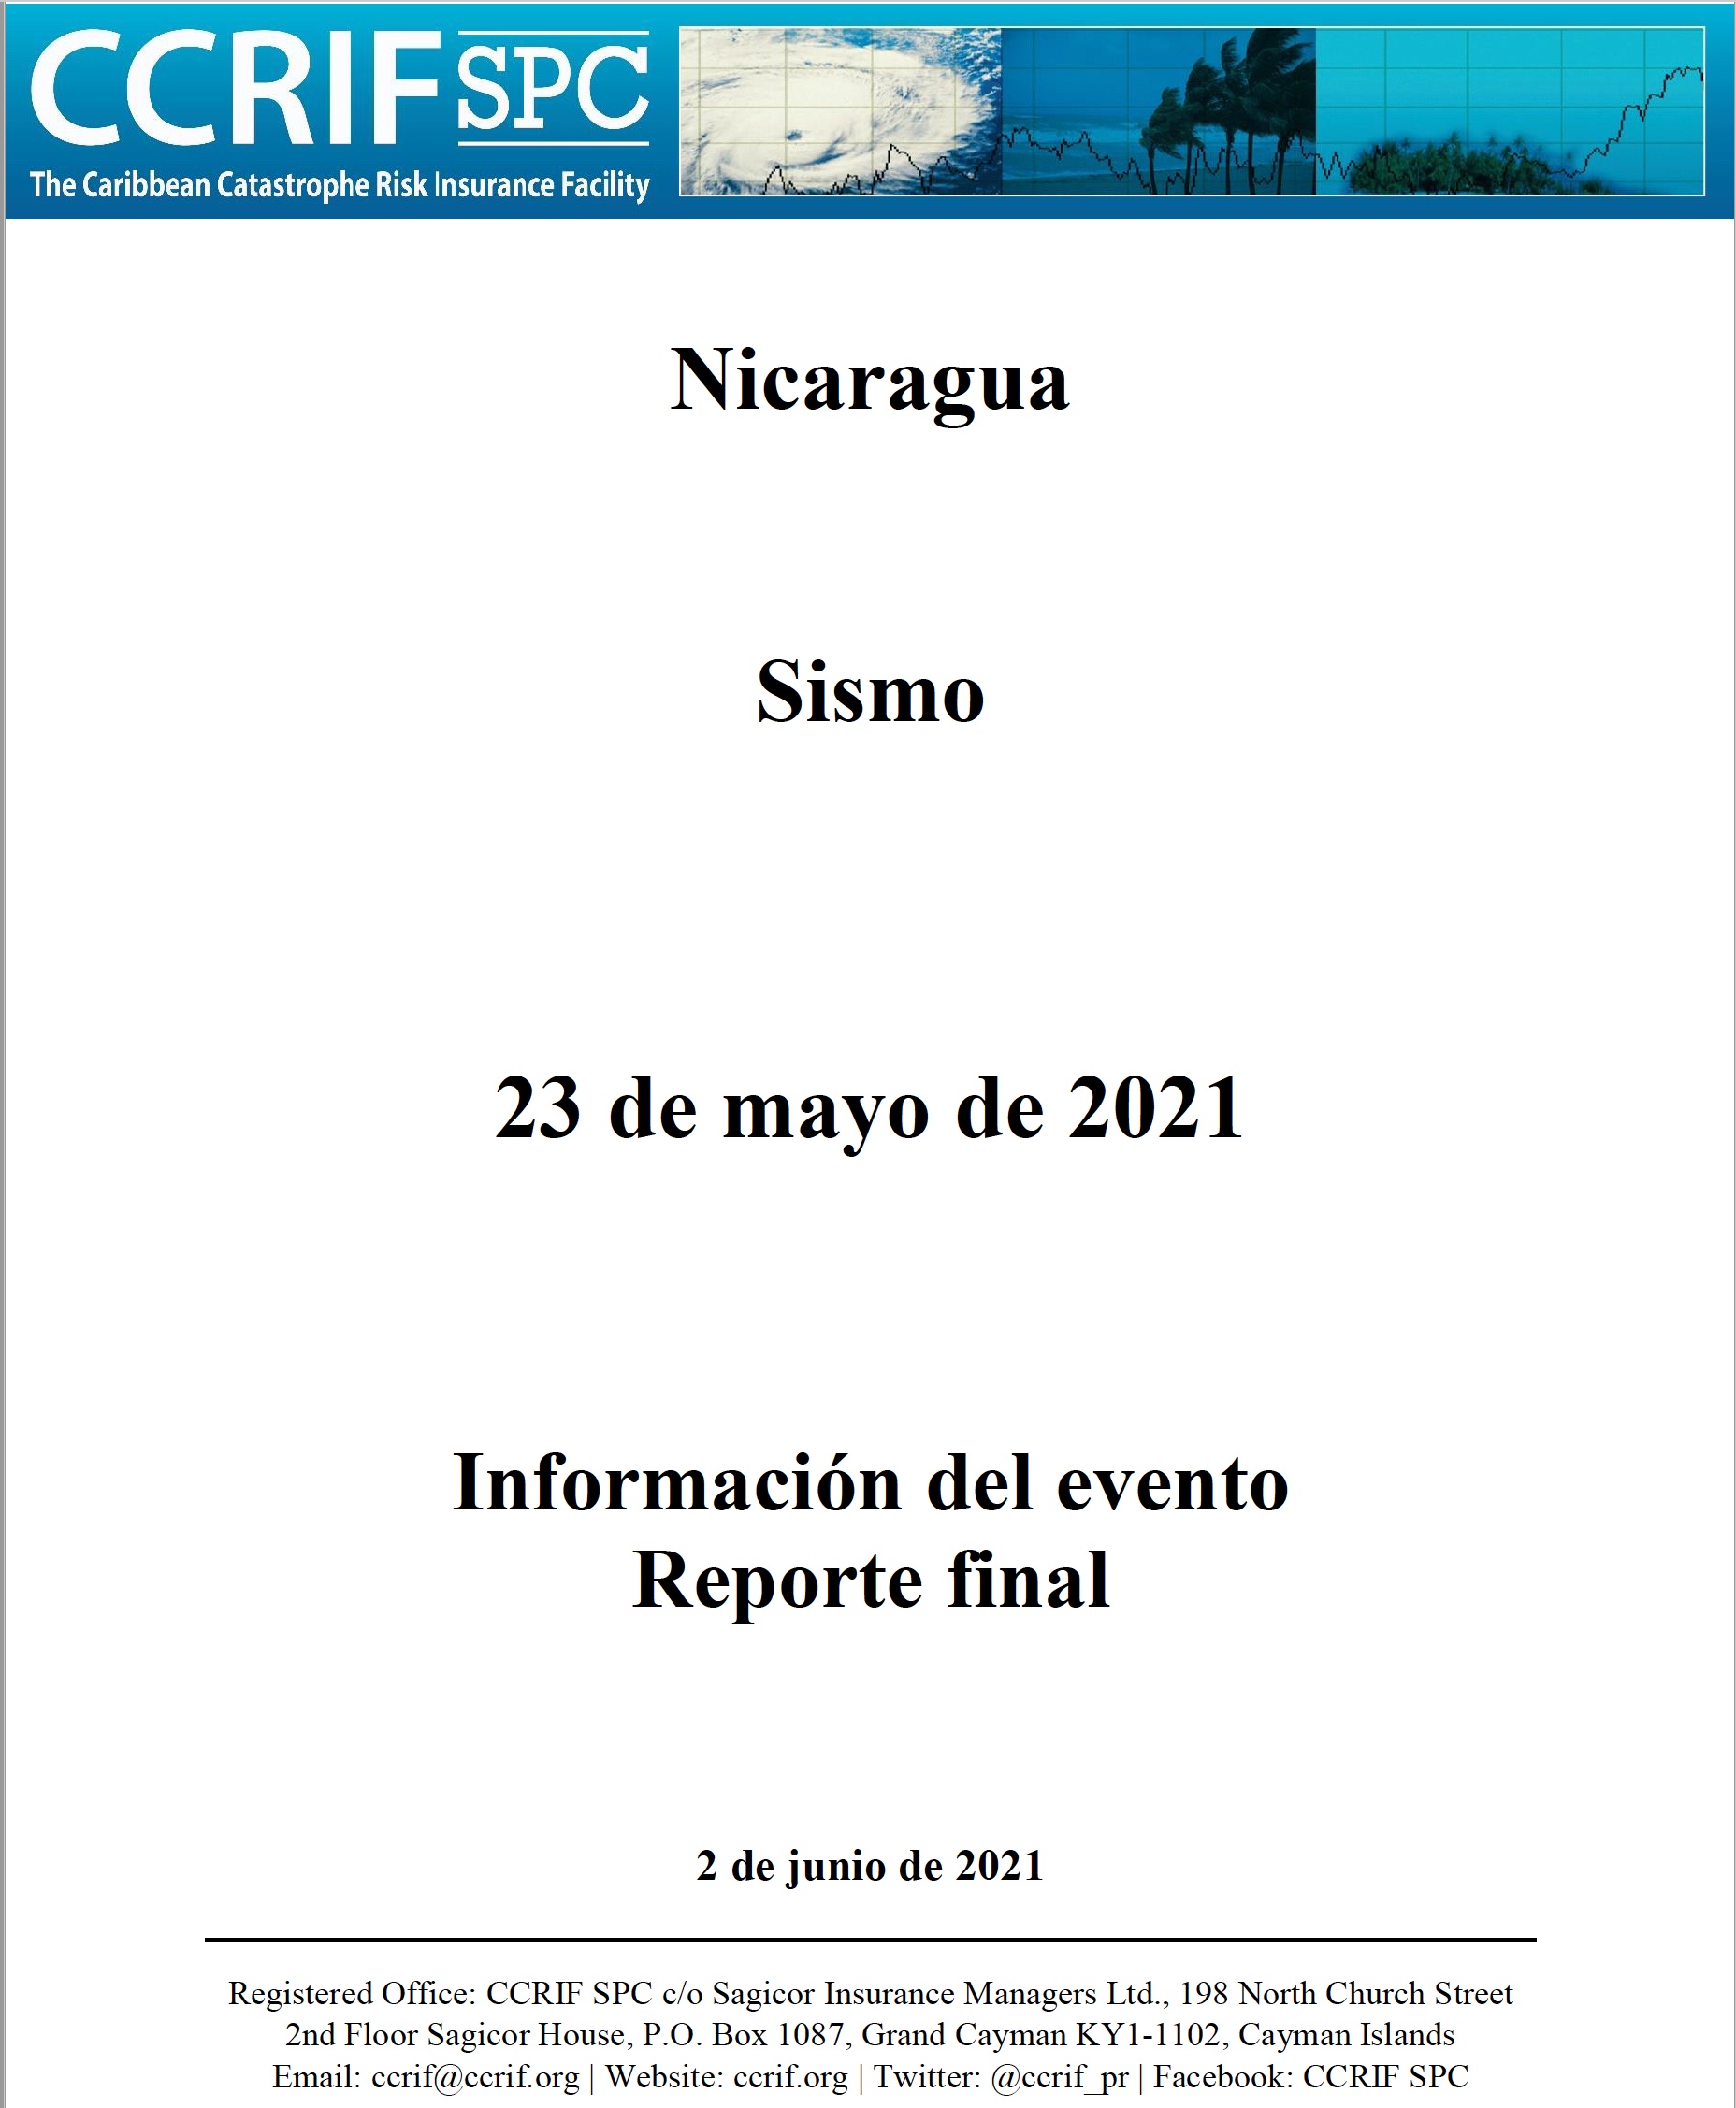 Información del evento Reporte final - Sismo - Nicaragua - 23 de mayo de 2021